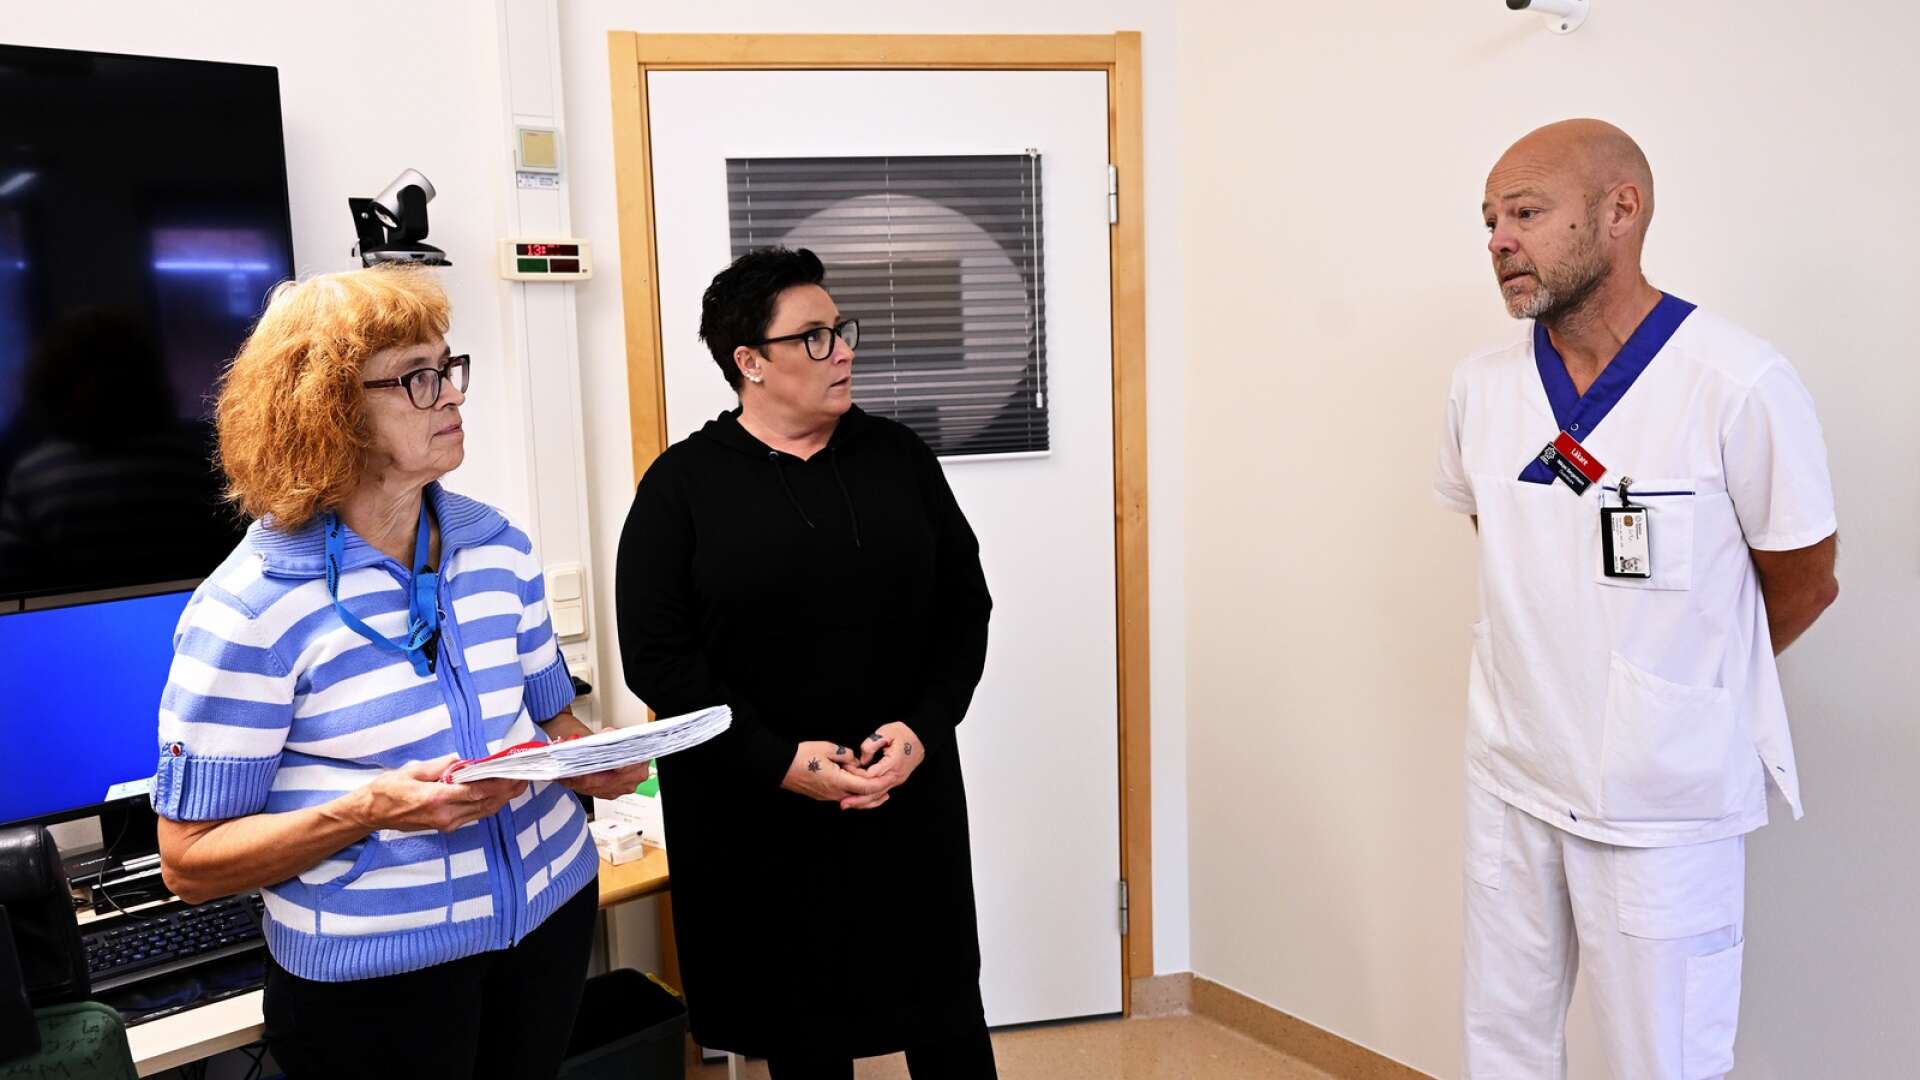 Undersköterskorna Anita Halvarsson och Maria Erlandsson lämnar över namninsamlingen med 1200 underskrifter till Mikael Bergenheim, chef för slutenvården på CSK.